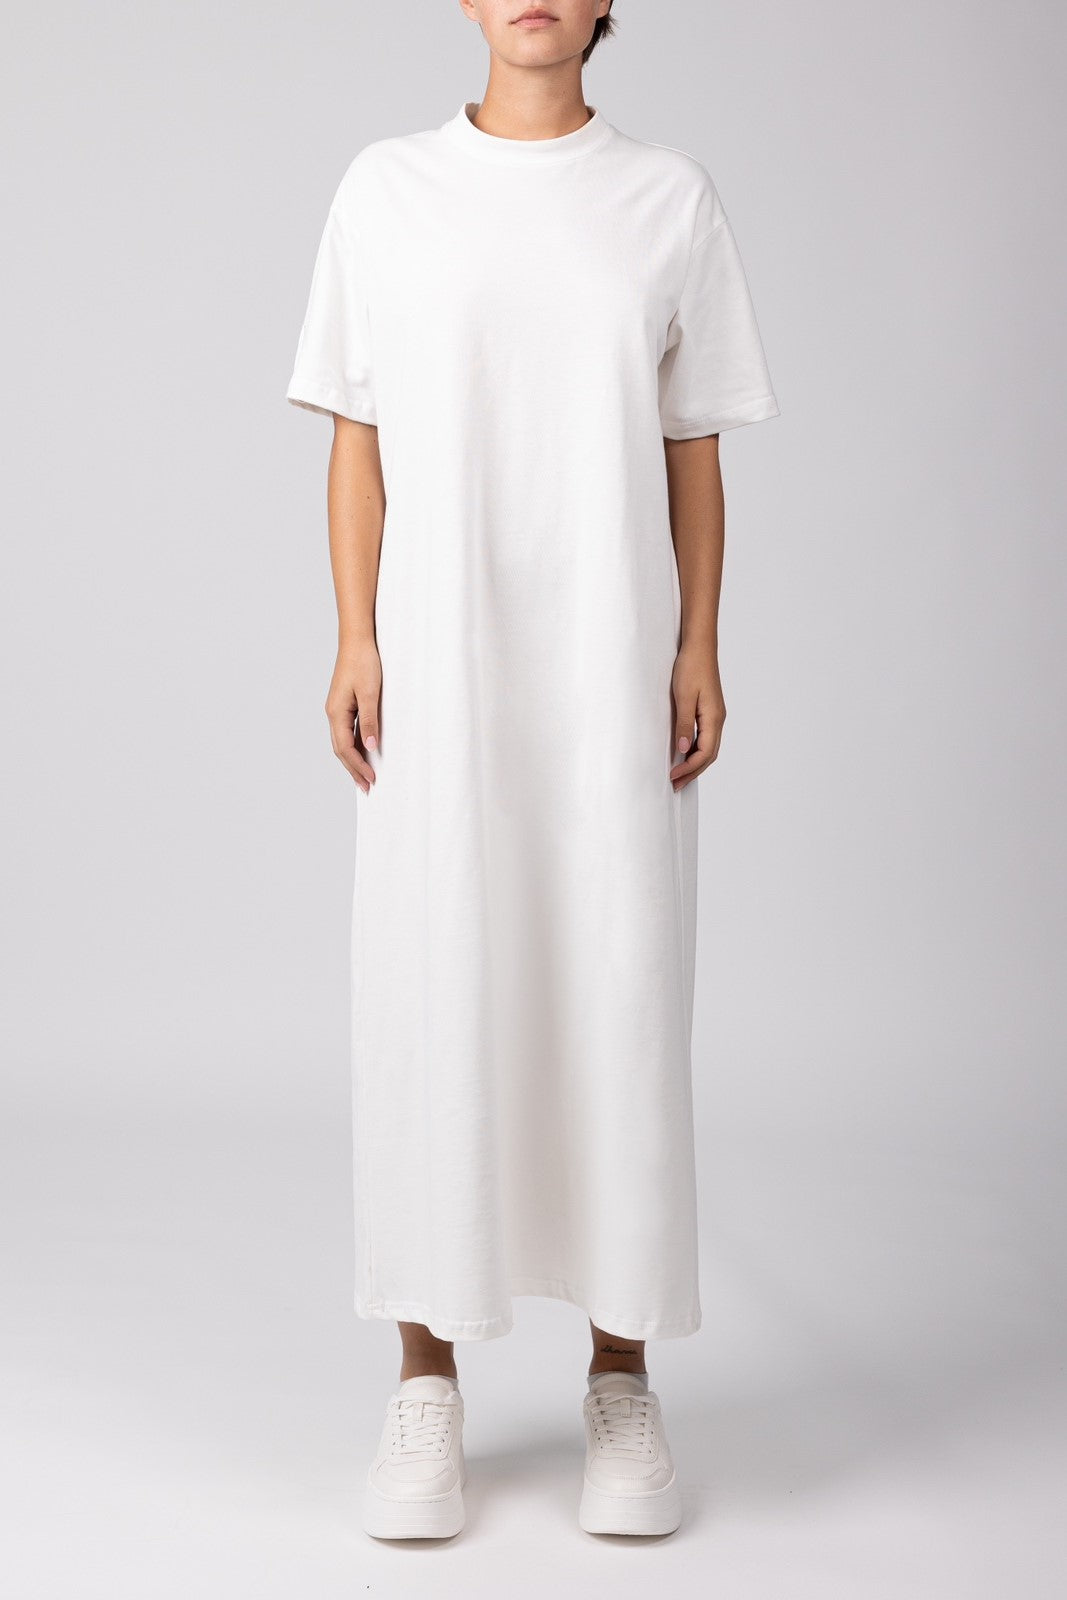 Dorothea Cotton Dress / White